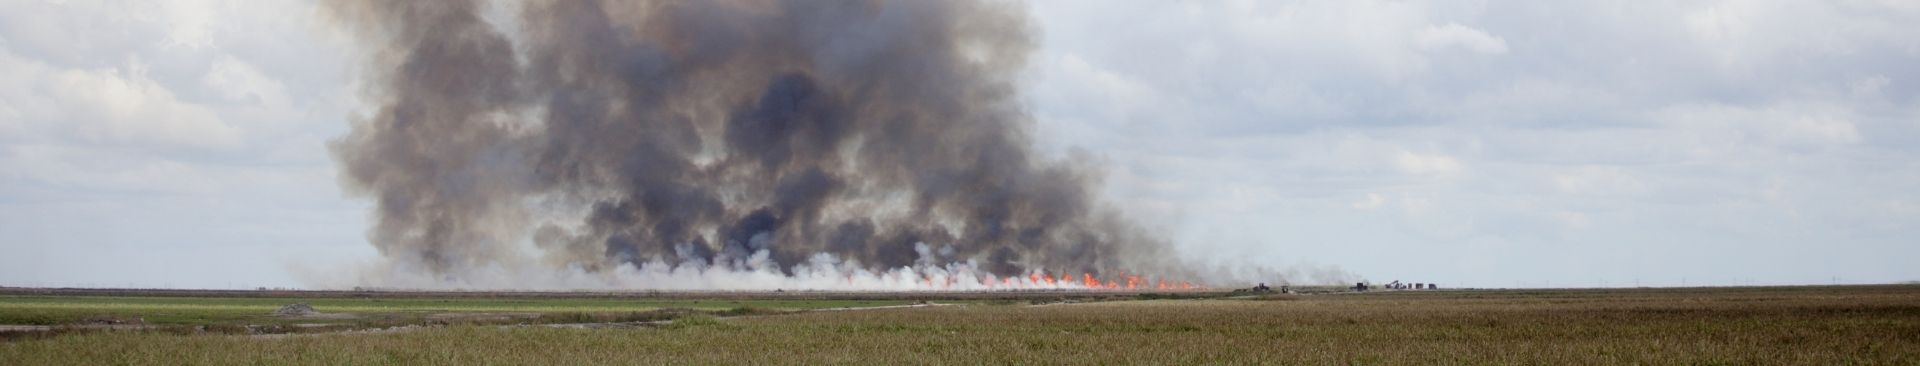 smoke in field from farm fire